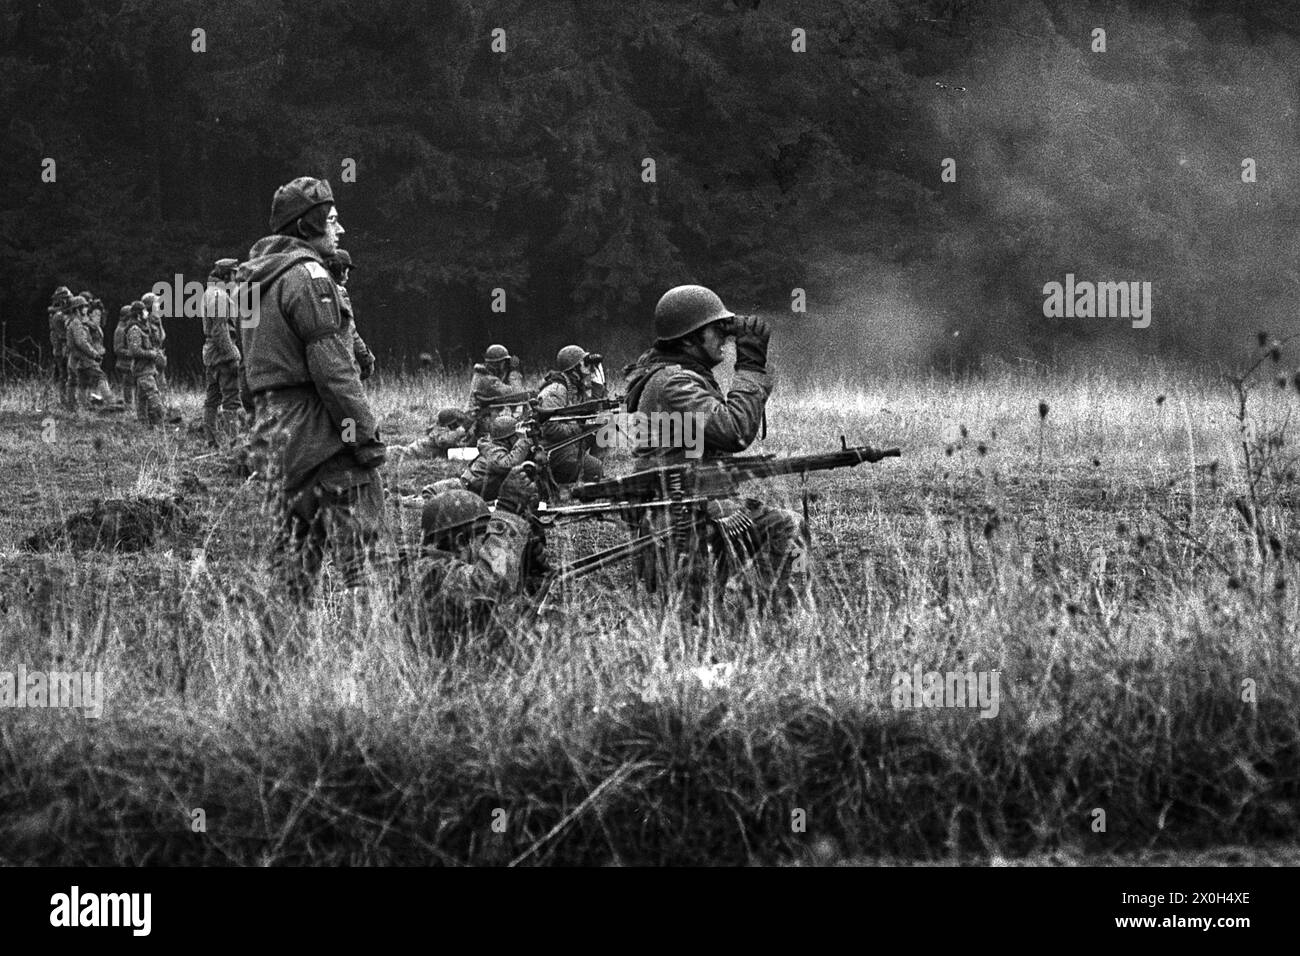 Esercitazione delle truppe: Diversi soldati della Bundeswehr sparano ai bersagli con mitragliatrici durante una manovra su un'area di addestramento militare. Il secondo cannone osserva i colpi con un telescopio. Gli istruttori controllano l'azione. [traduzione automatizzata] Foto Stock